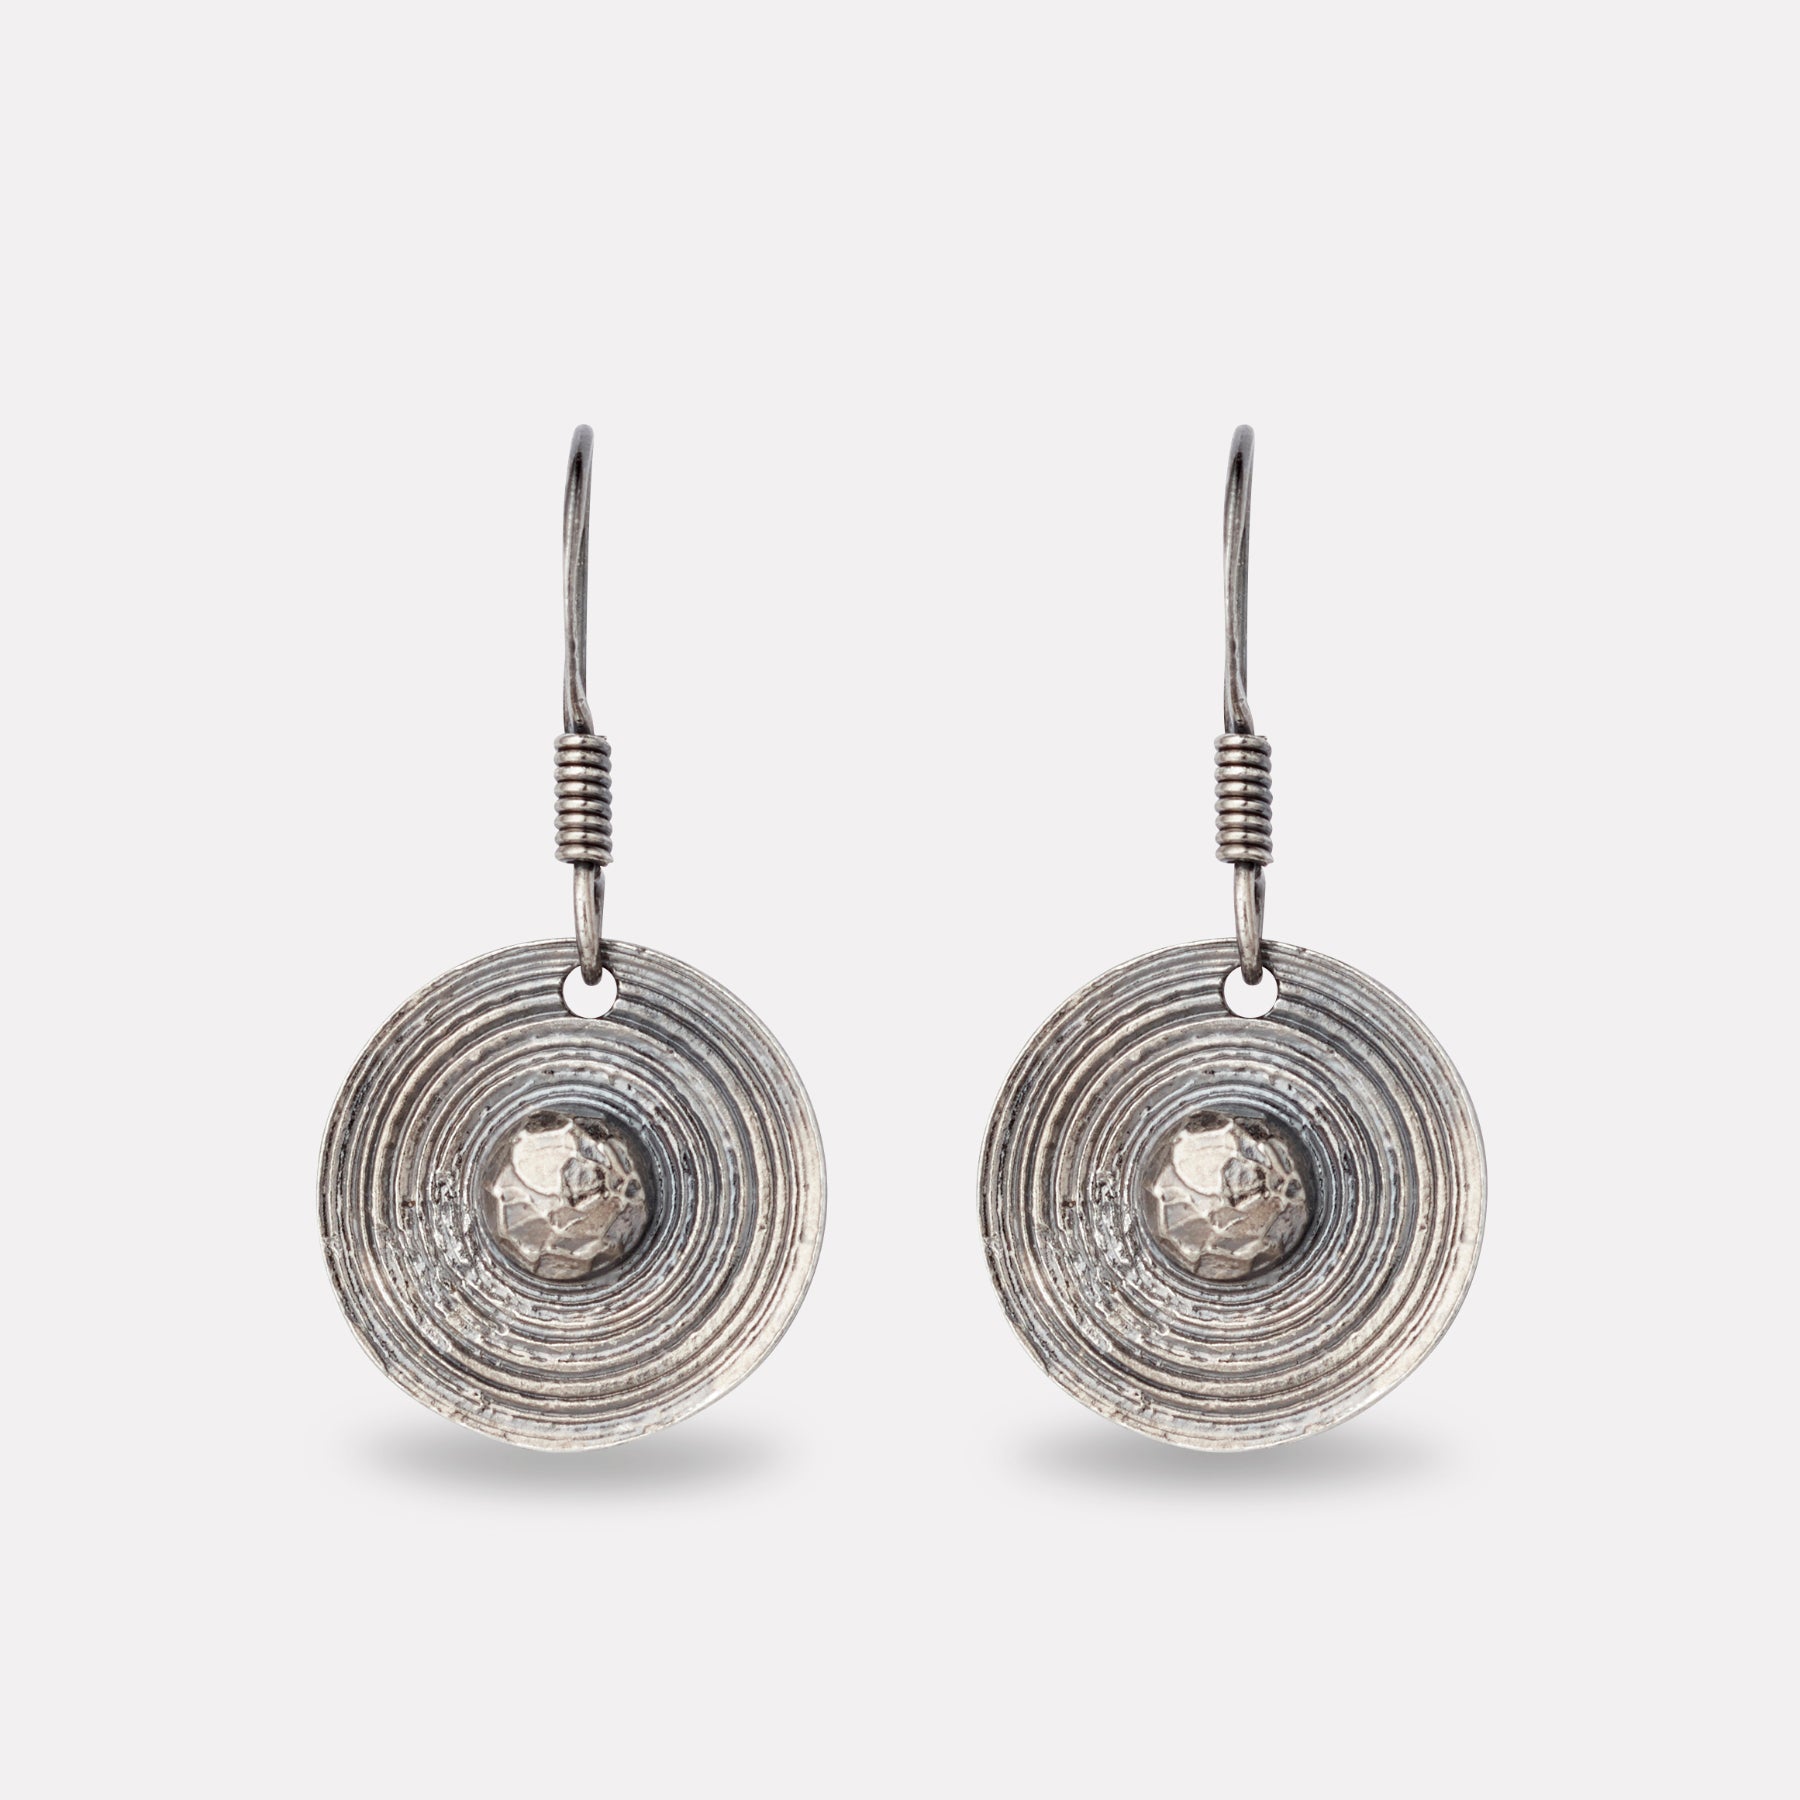 Viking shield earrings in oxidized silver